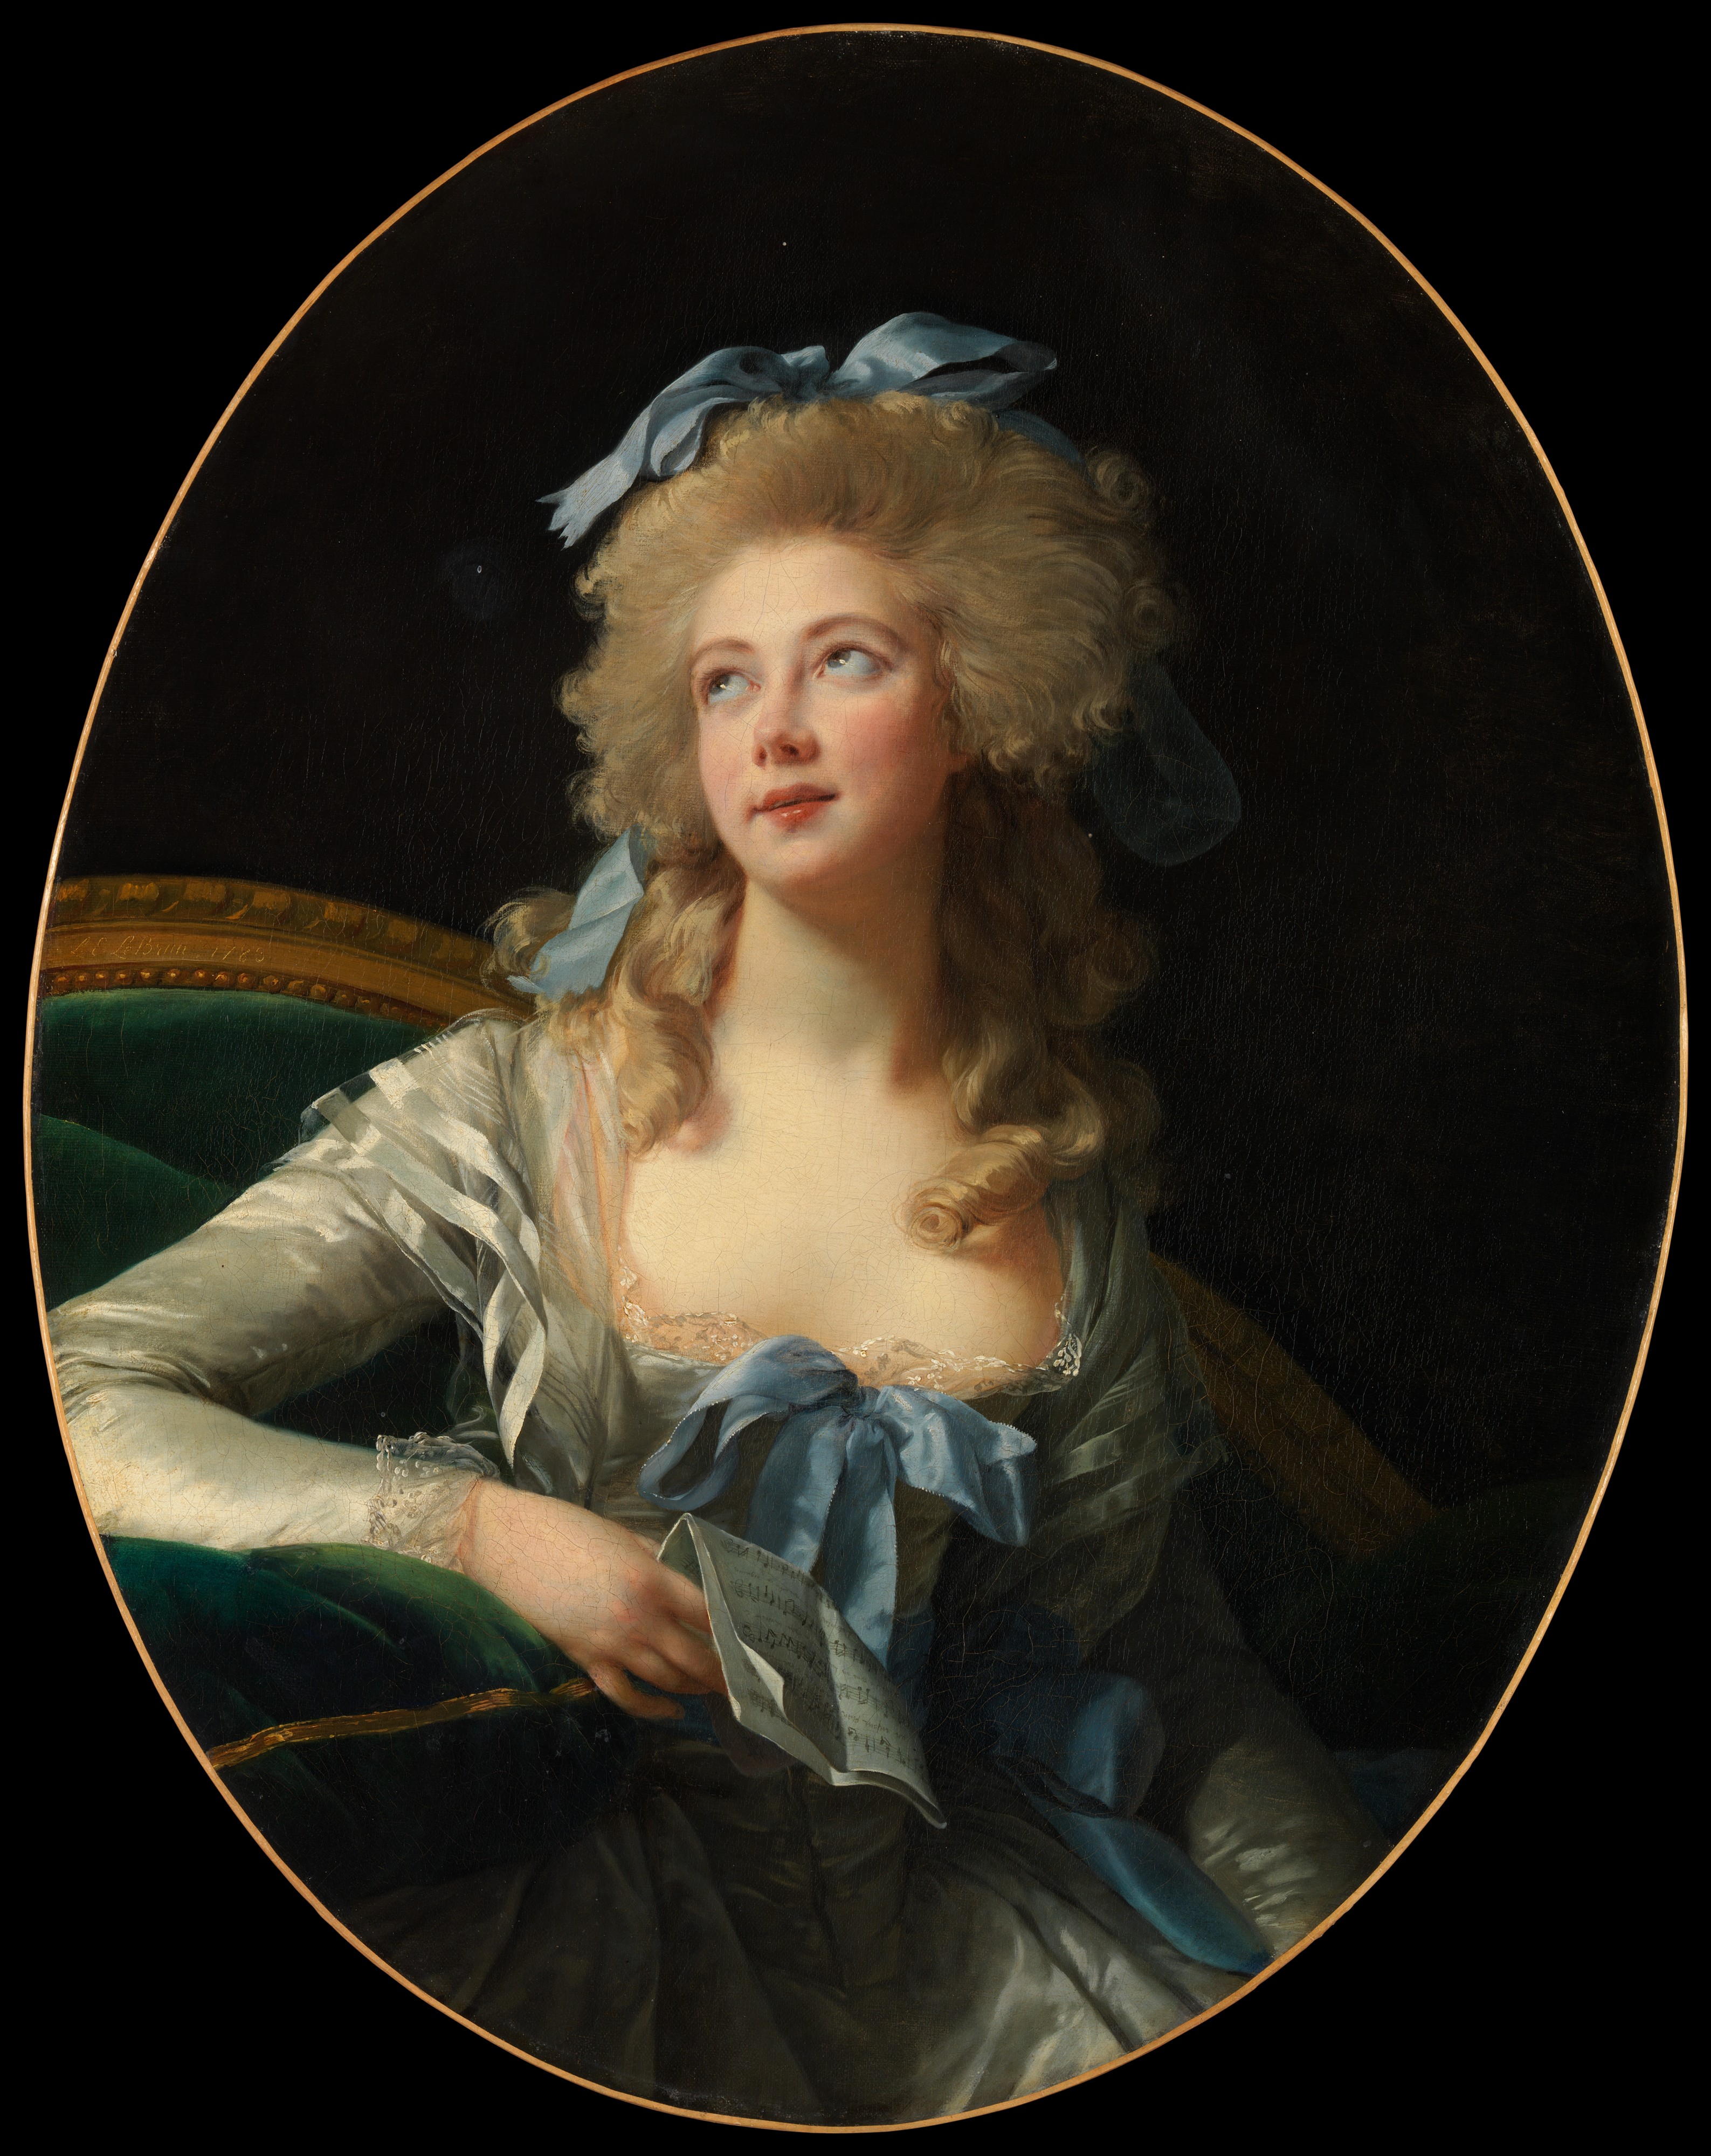 Madame Grand (Noël Catherine Vorlée) by Élisabeth Vigee Le Brun - 1783 - 92.1 x 72.4 cm Metropolitan Museum of Art